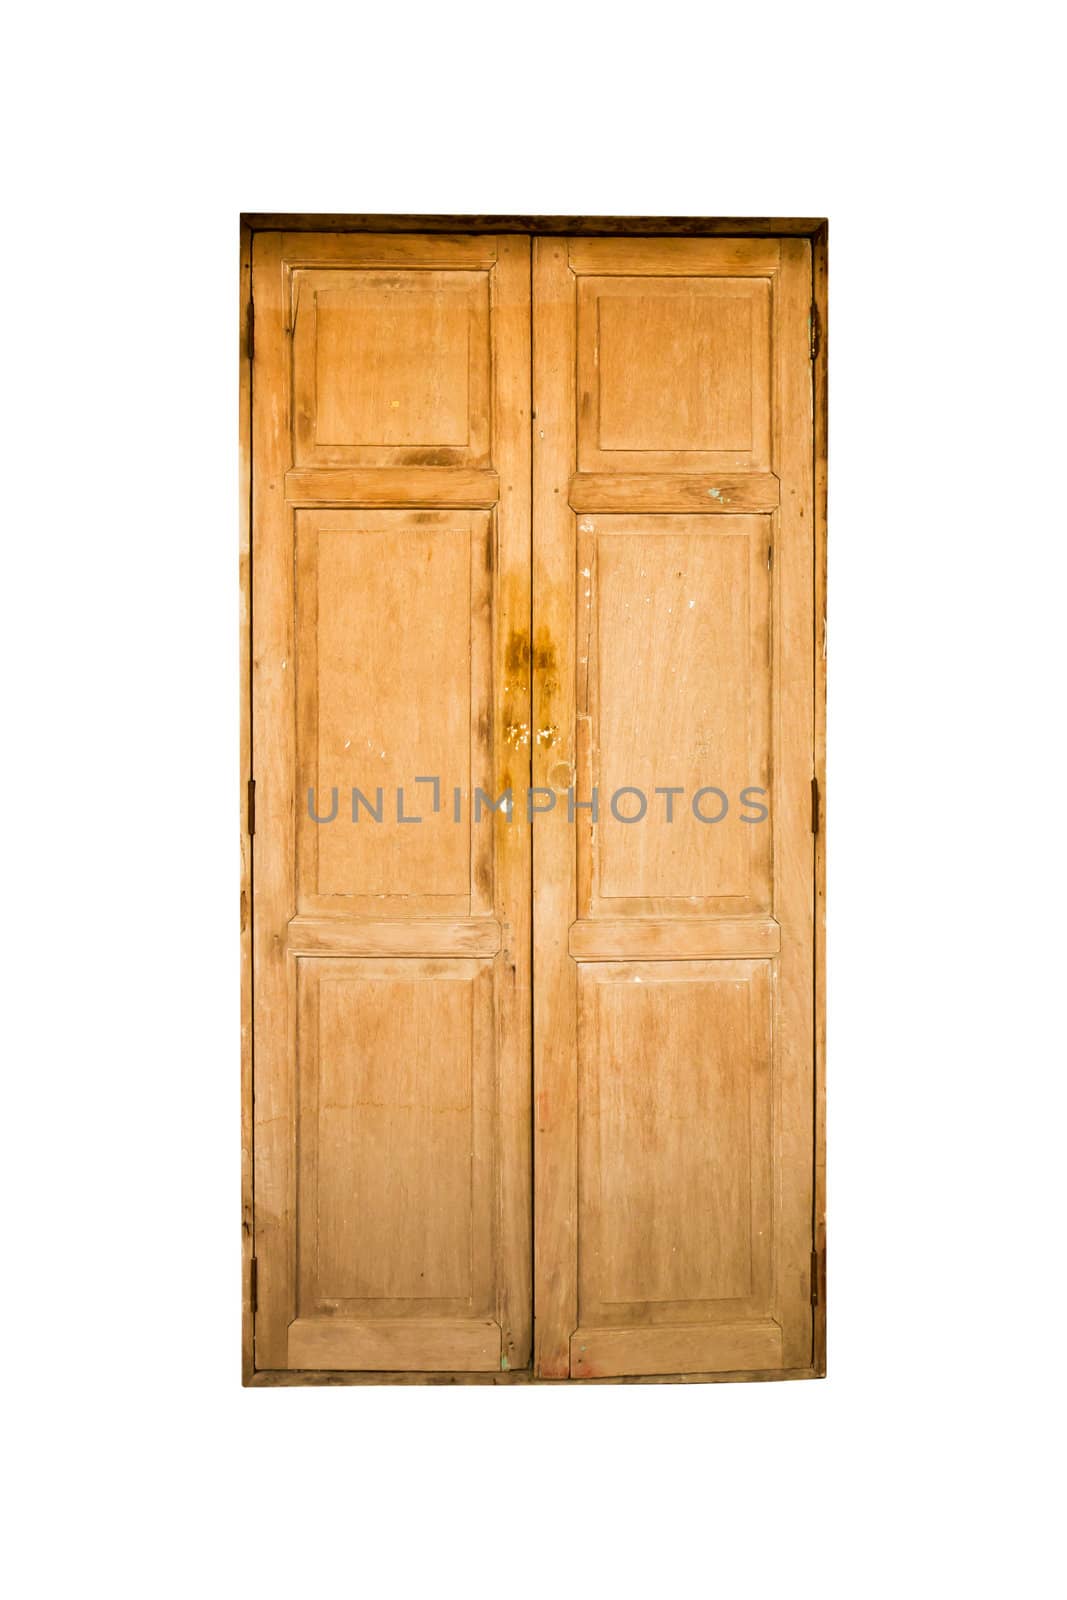 Grunge door background with white